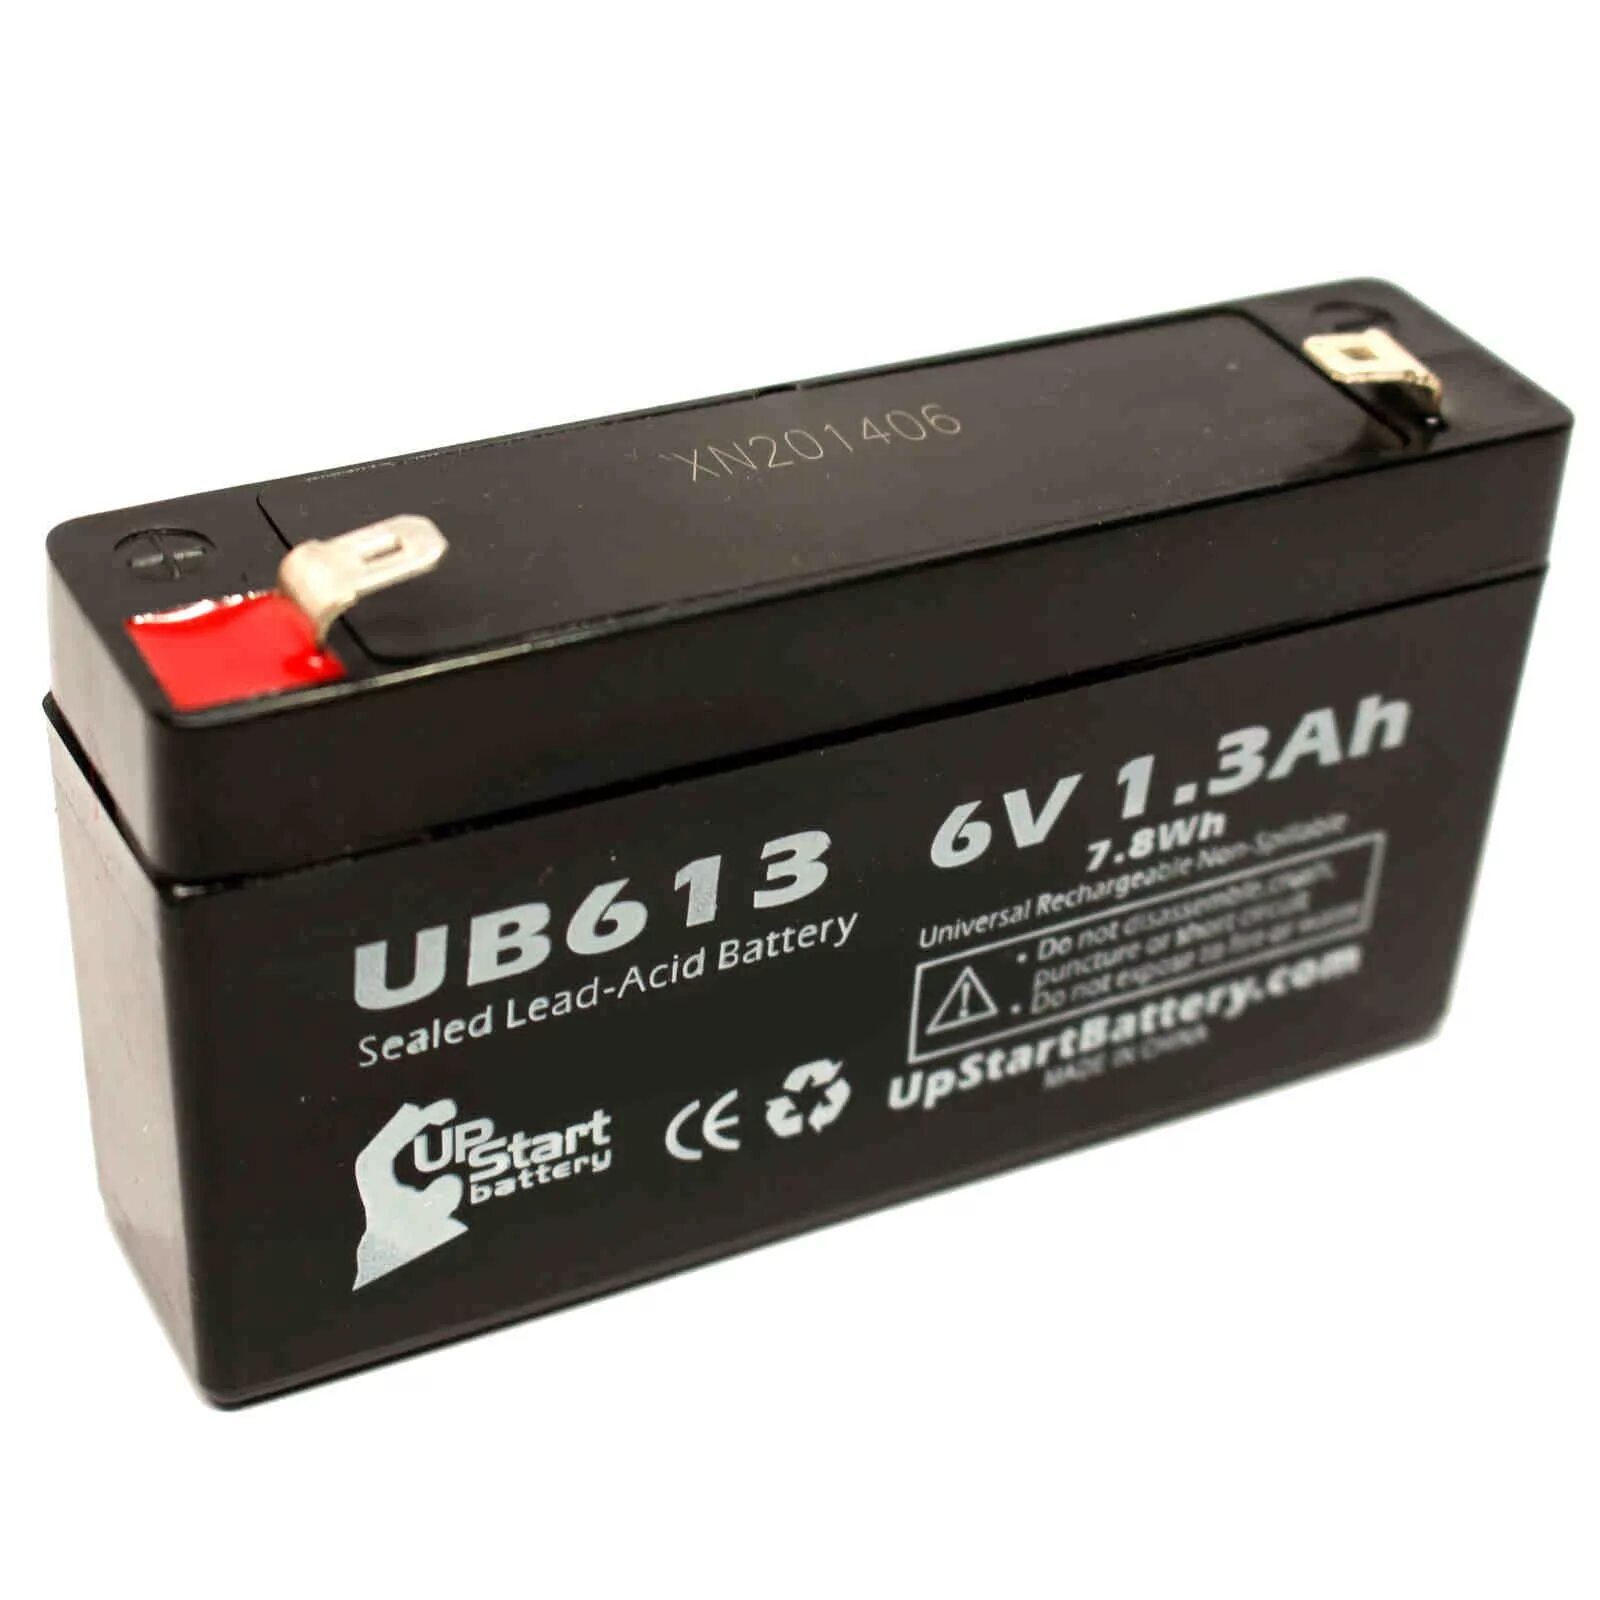 Sealed Rechargeable lead-acid Battery 6v. Аккумулятор Sealed Rechargeable lead-acid Battery 6v. Аккумулятор Leoch DJW 12-1.3. Leoch DJW 12-2,3 12v 2,3ah. Battery 6v